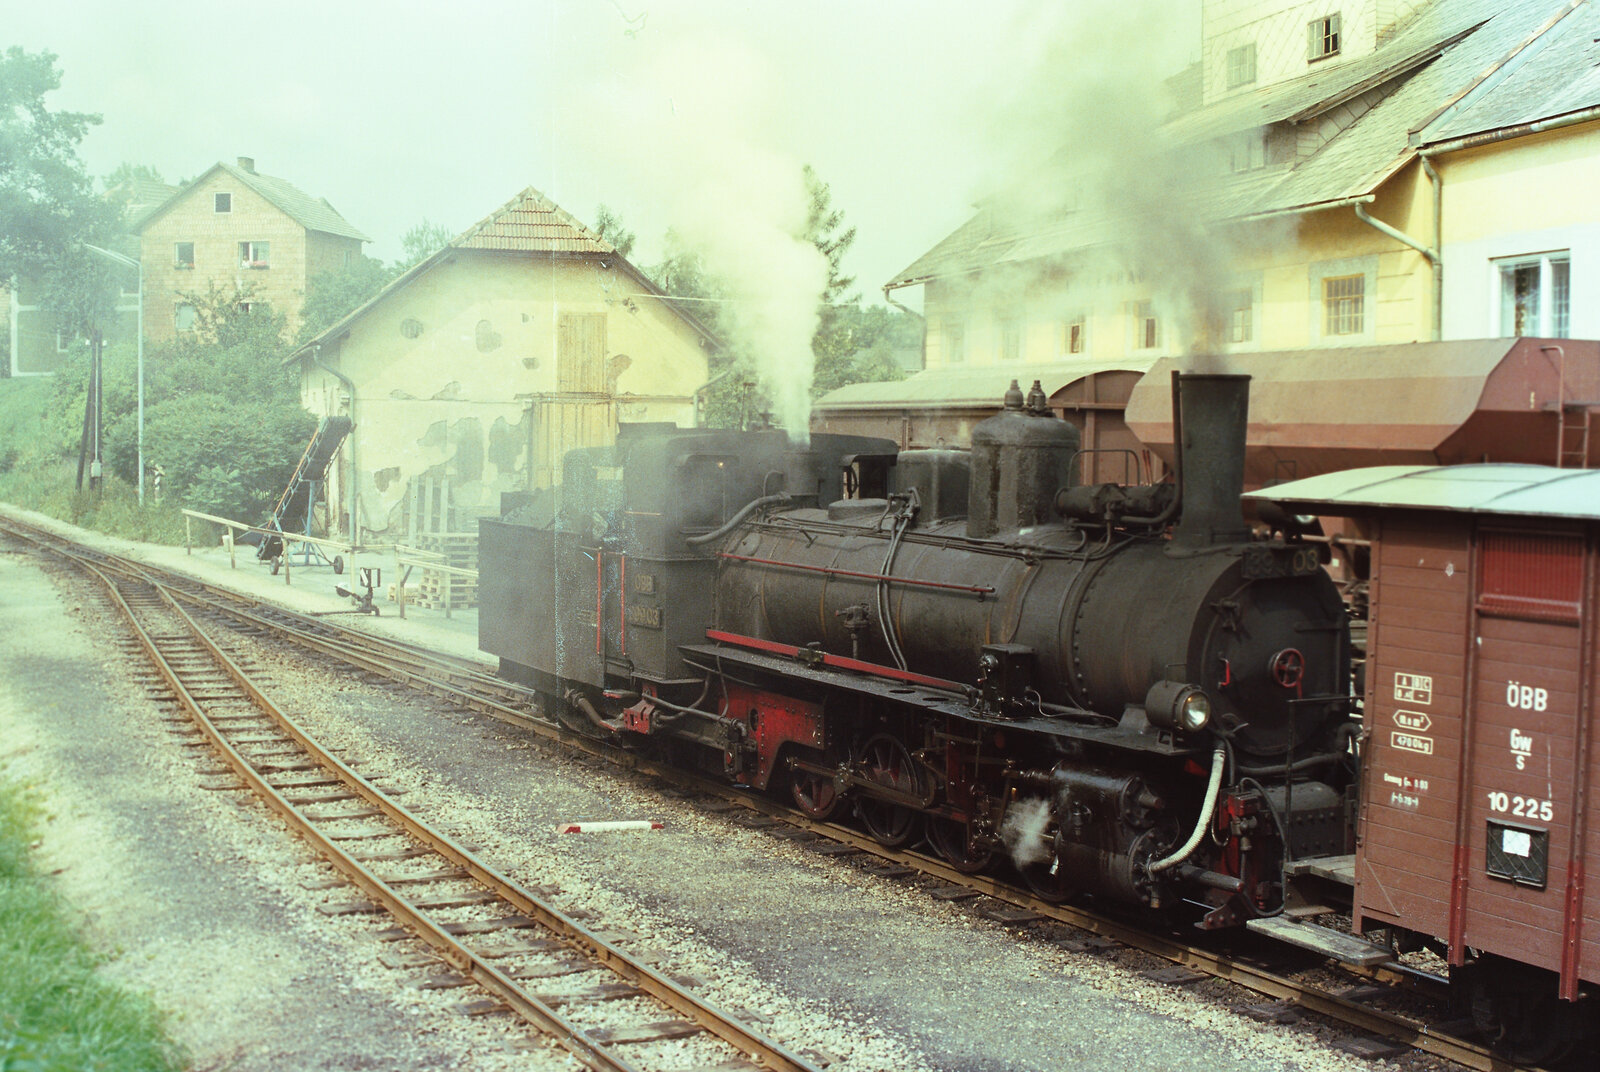 Waldviertelbahn, Groß-Gerungs. Der geschobene Wagen hatte die Nummer 10 225.
Datum: 20.08.1984